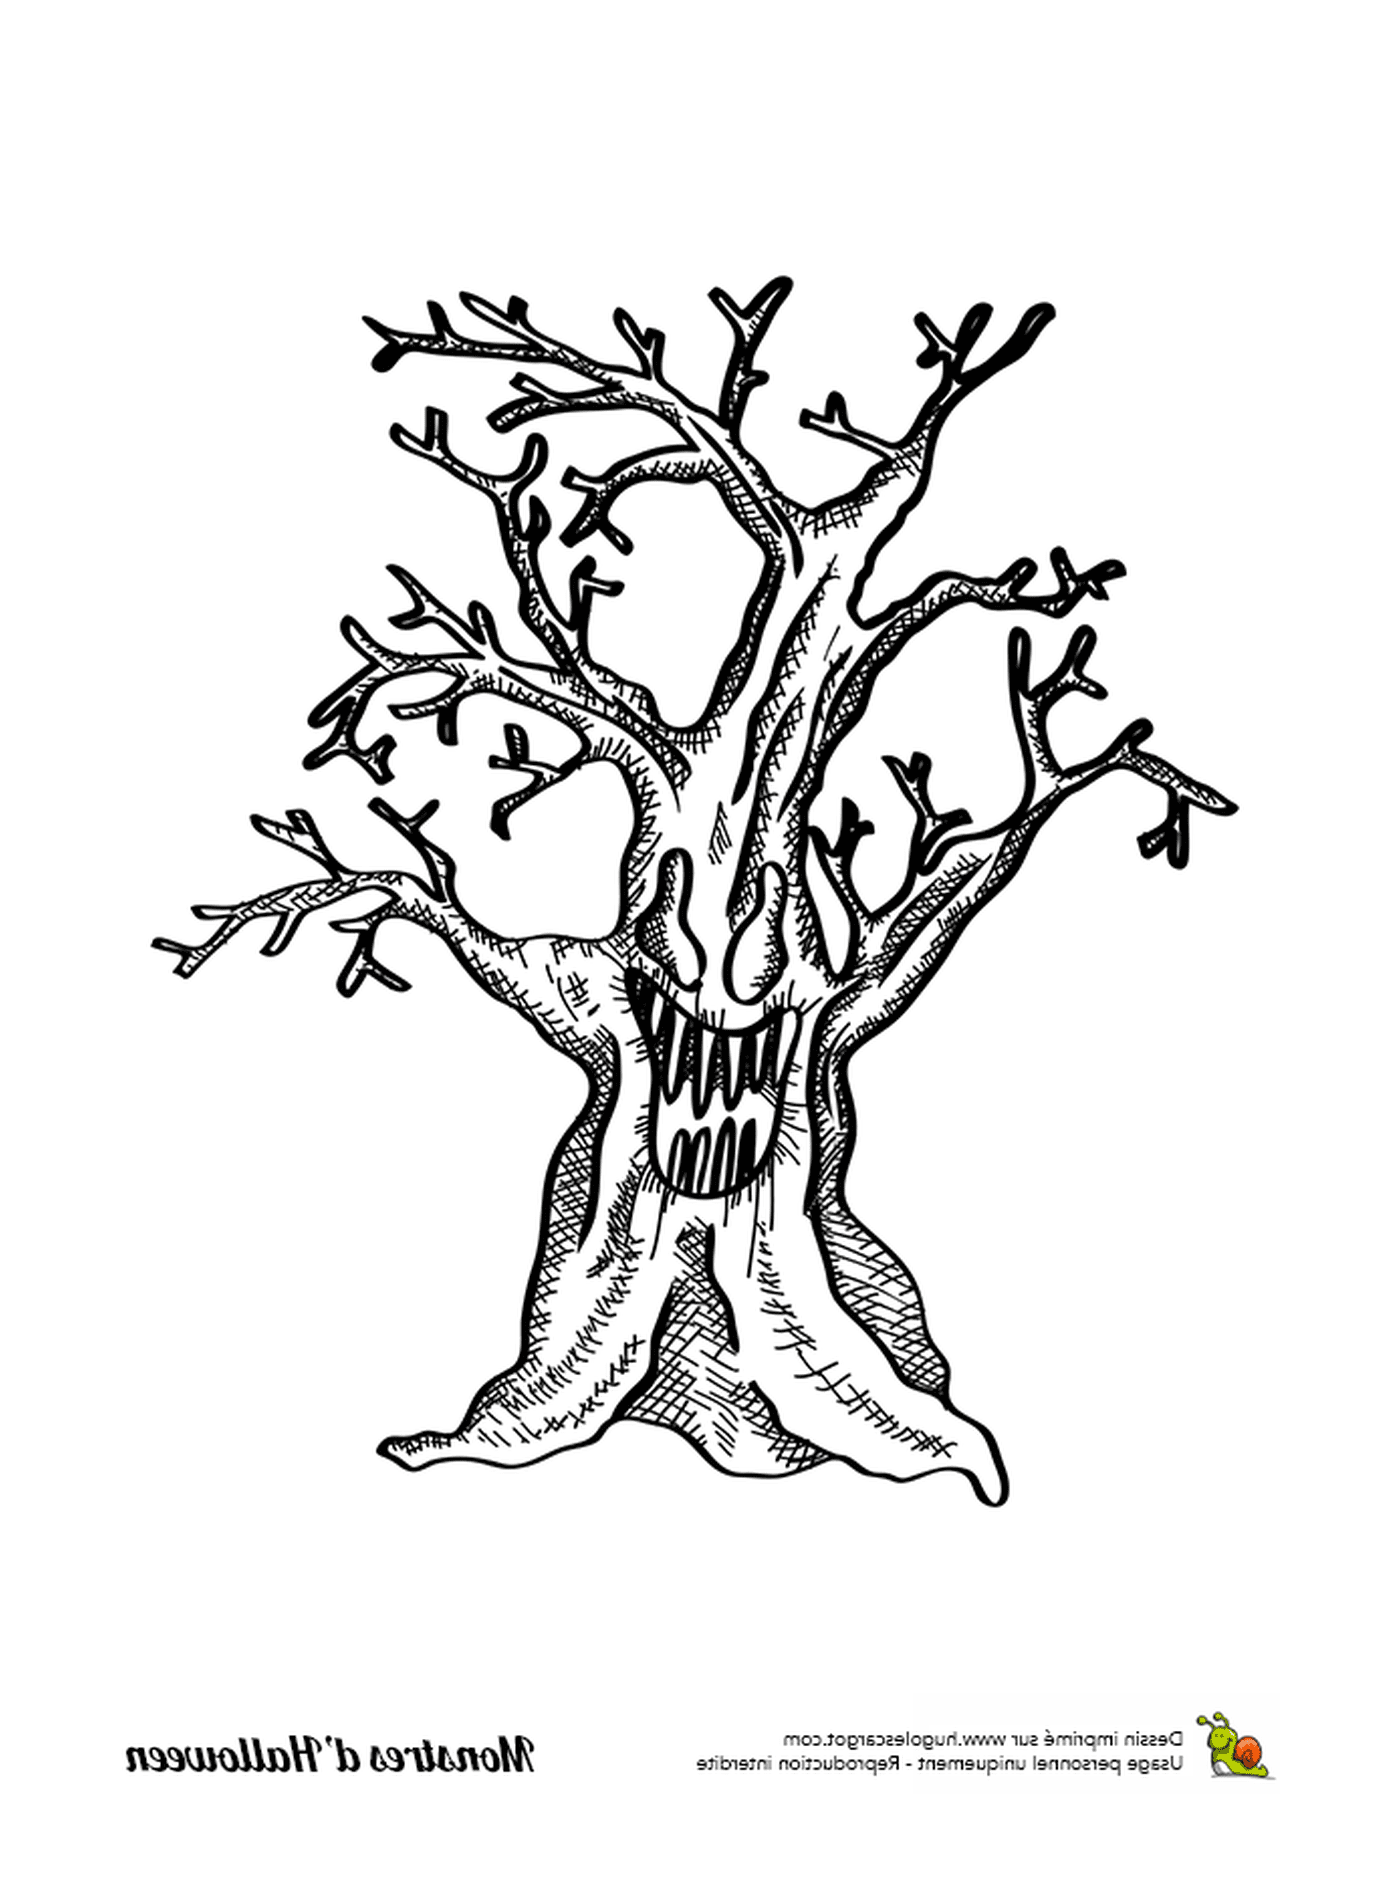  Un inchiostro, un vecchio albero senza foglie 